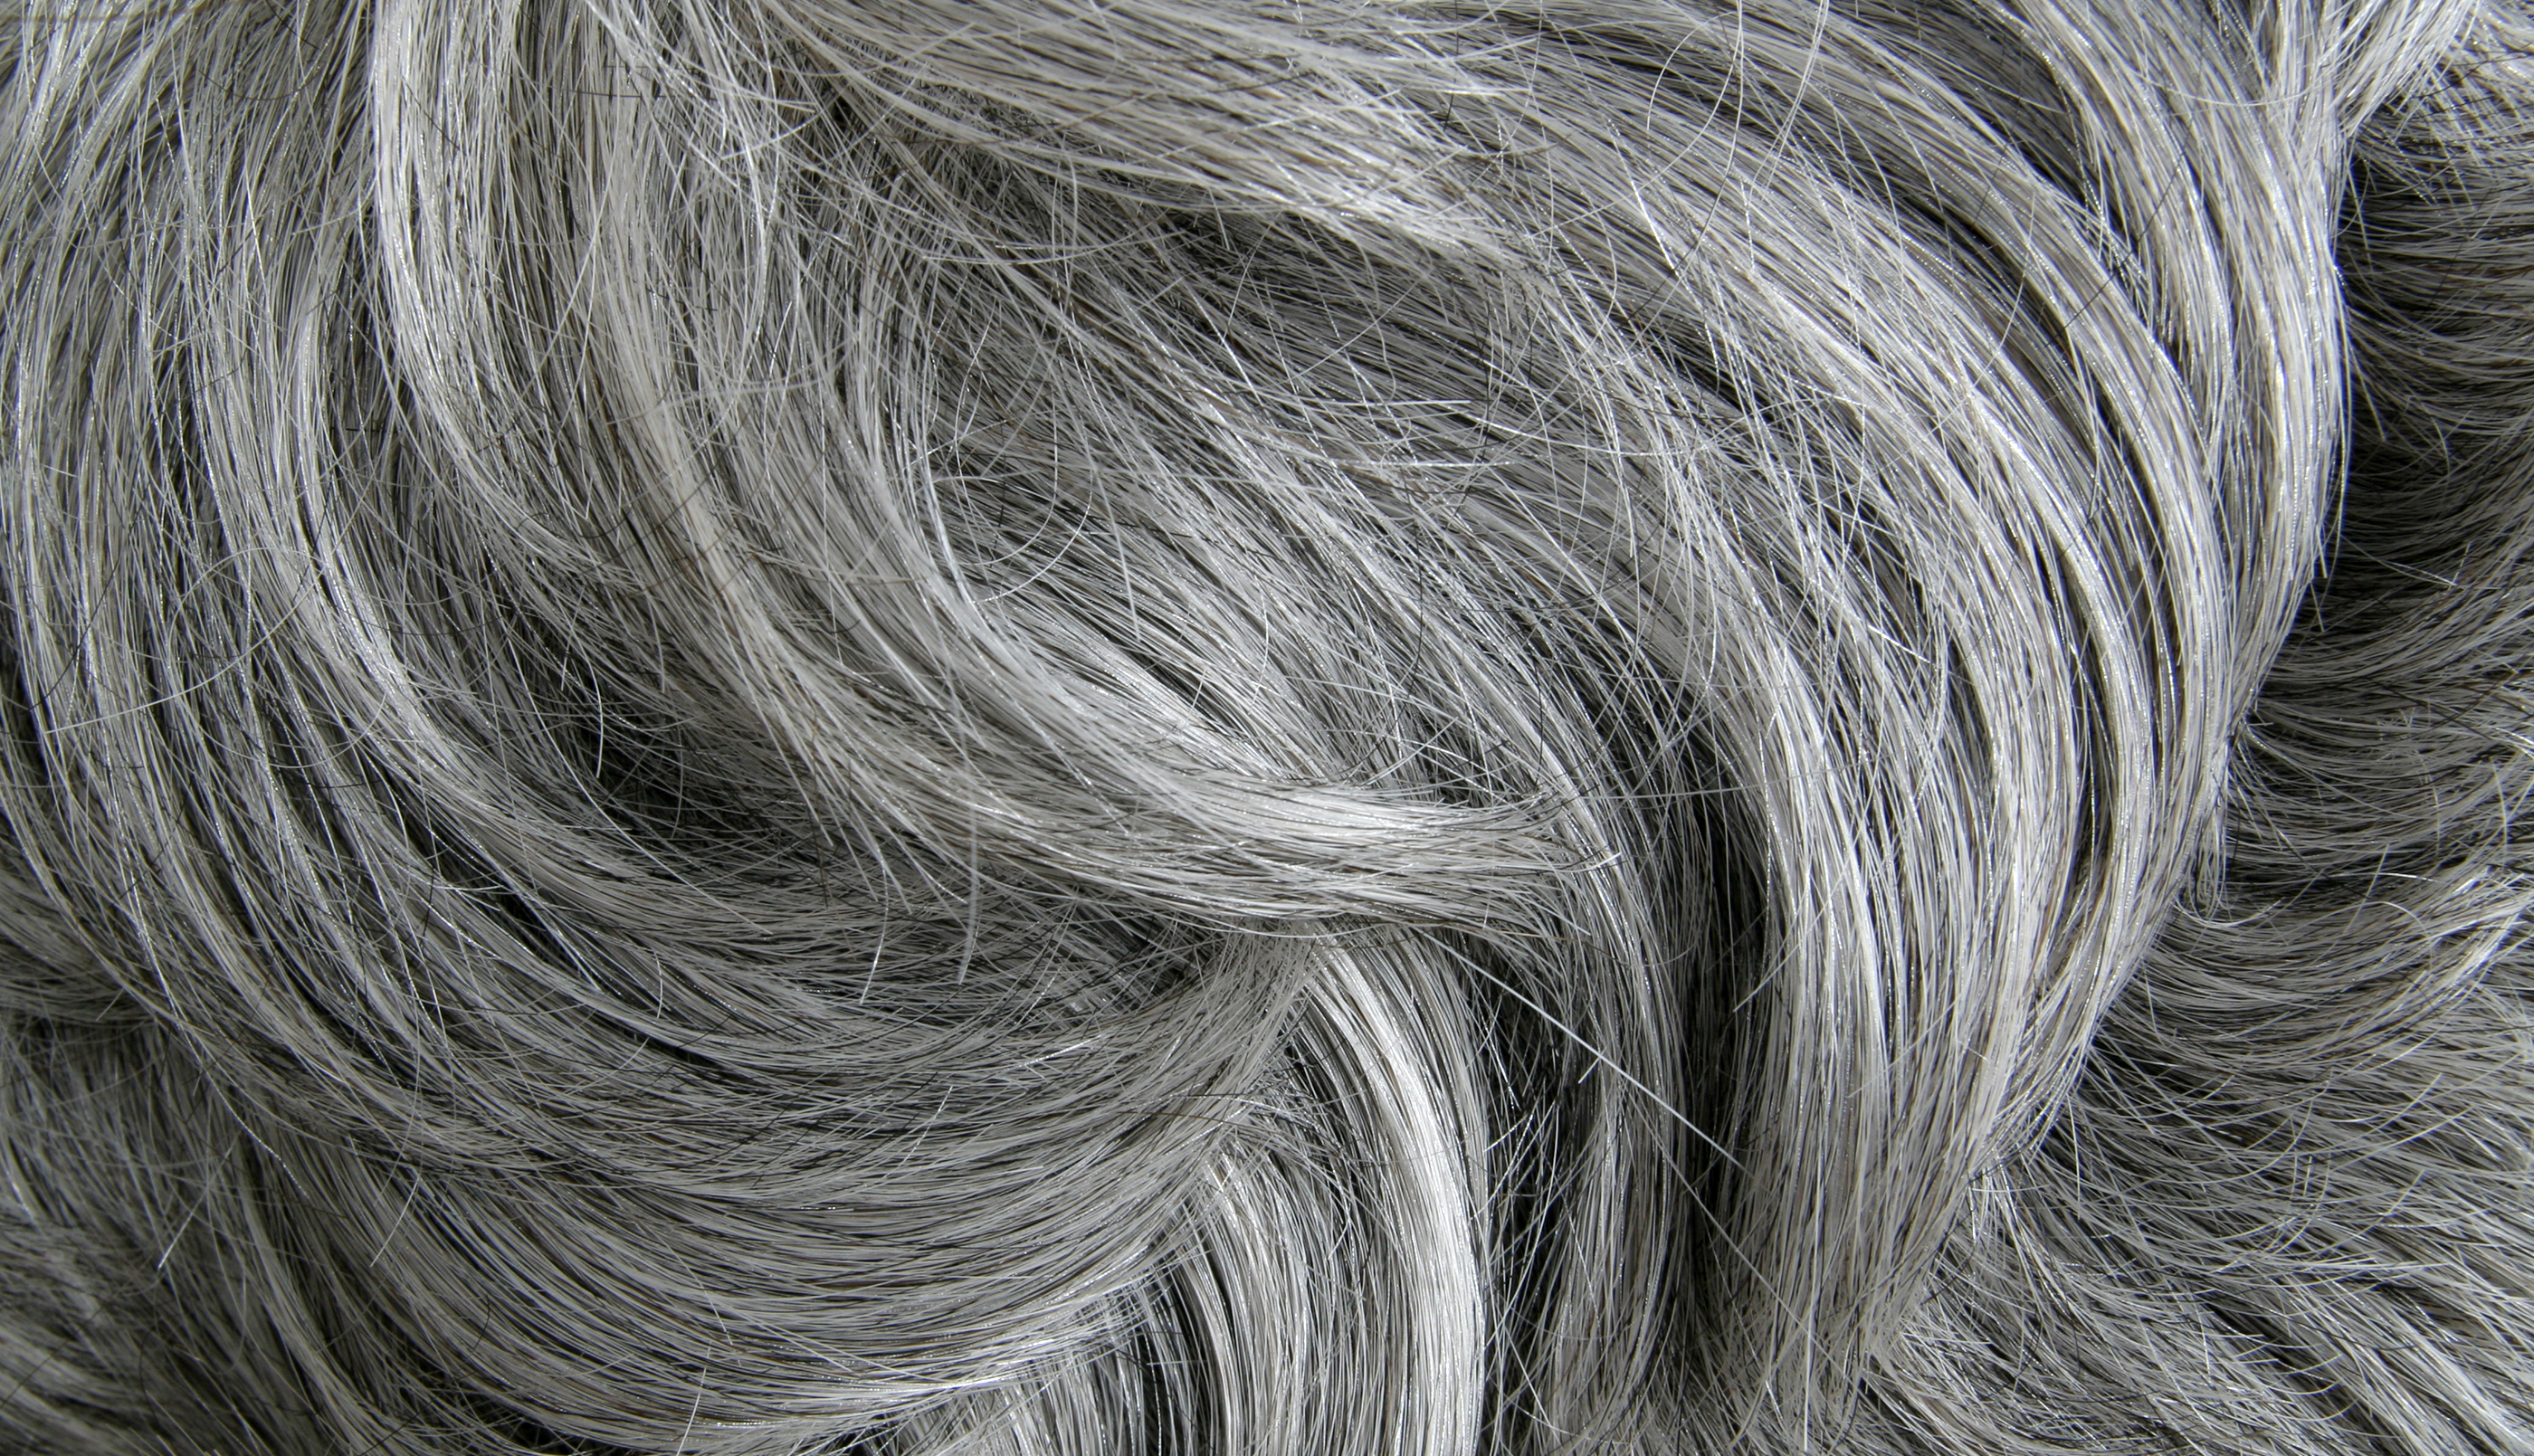 A close-up image of gray hair